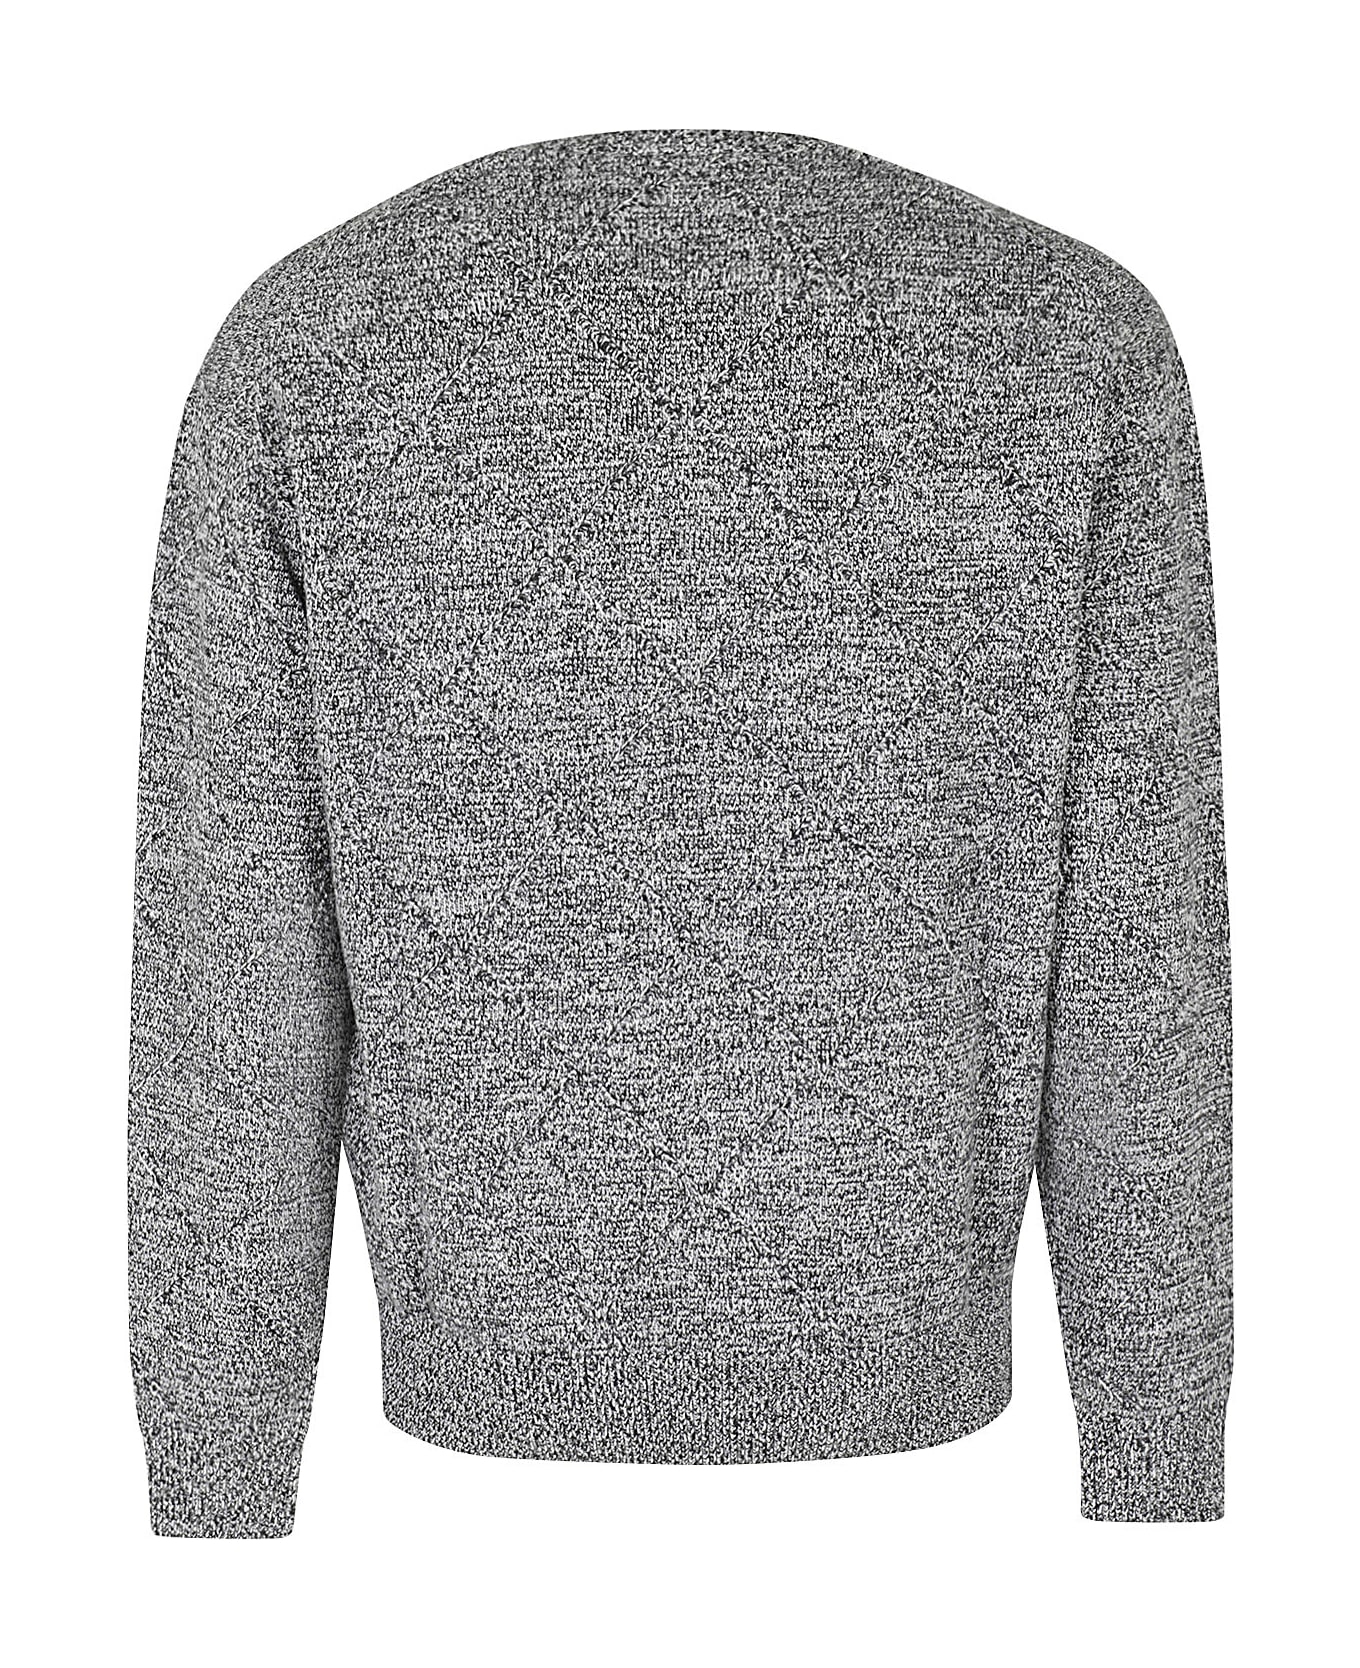 Neil Barrett Triangle Neck Detail Sweater - Black White ニットウェア